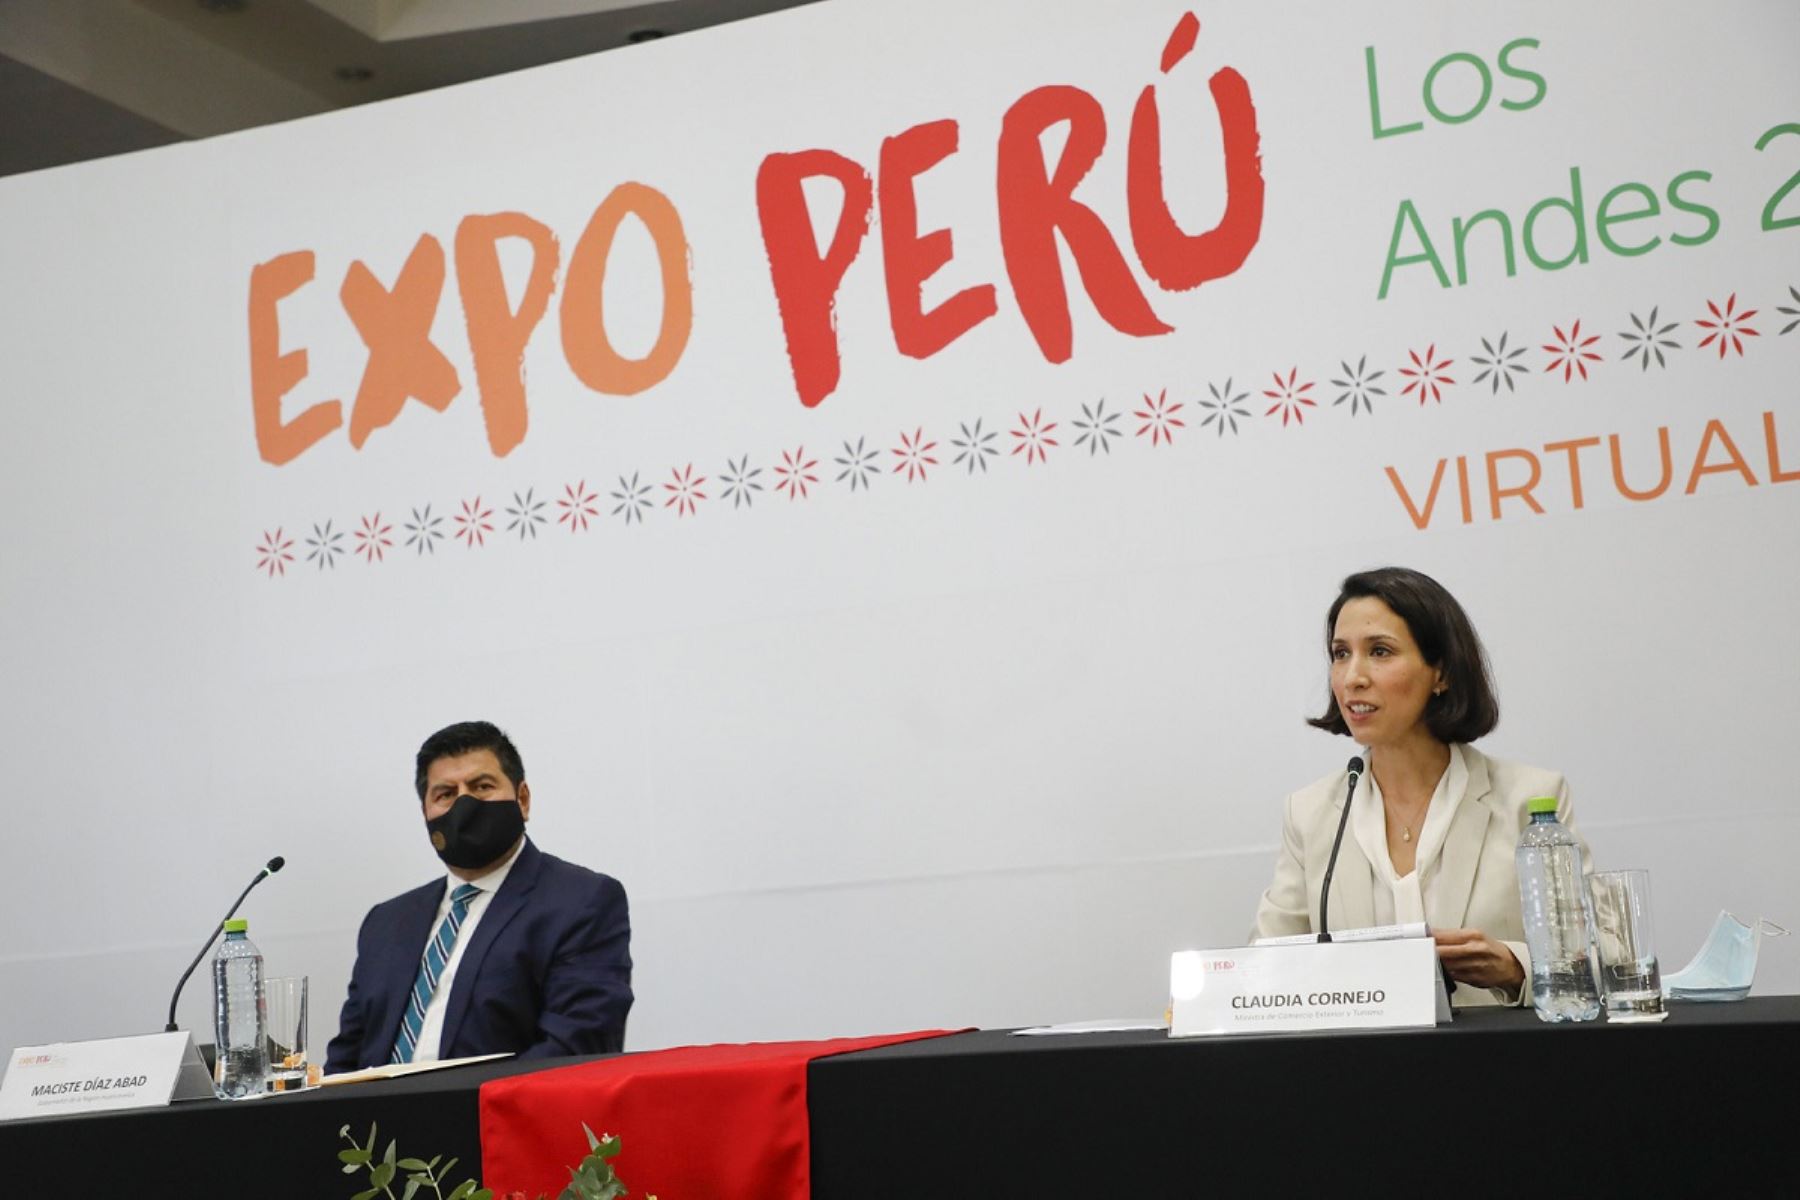 Ministra de Comercio Exterior y Turismo, Claudia Cornejo, en presentación de Expo Perú Los Andes 2020. Foto: Cortesía.